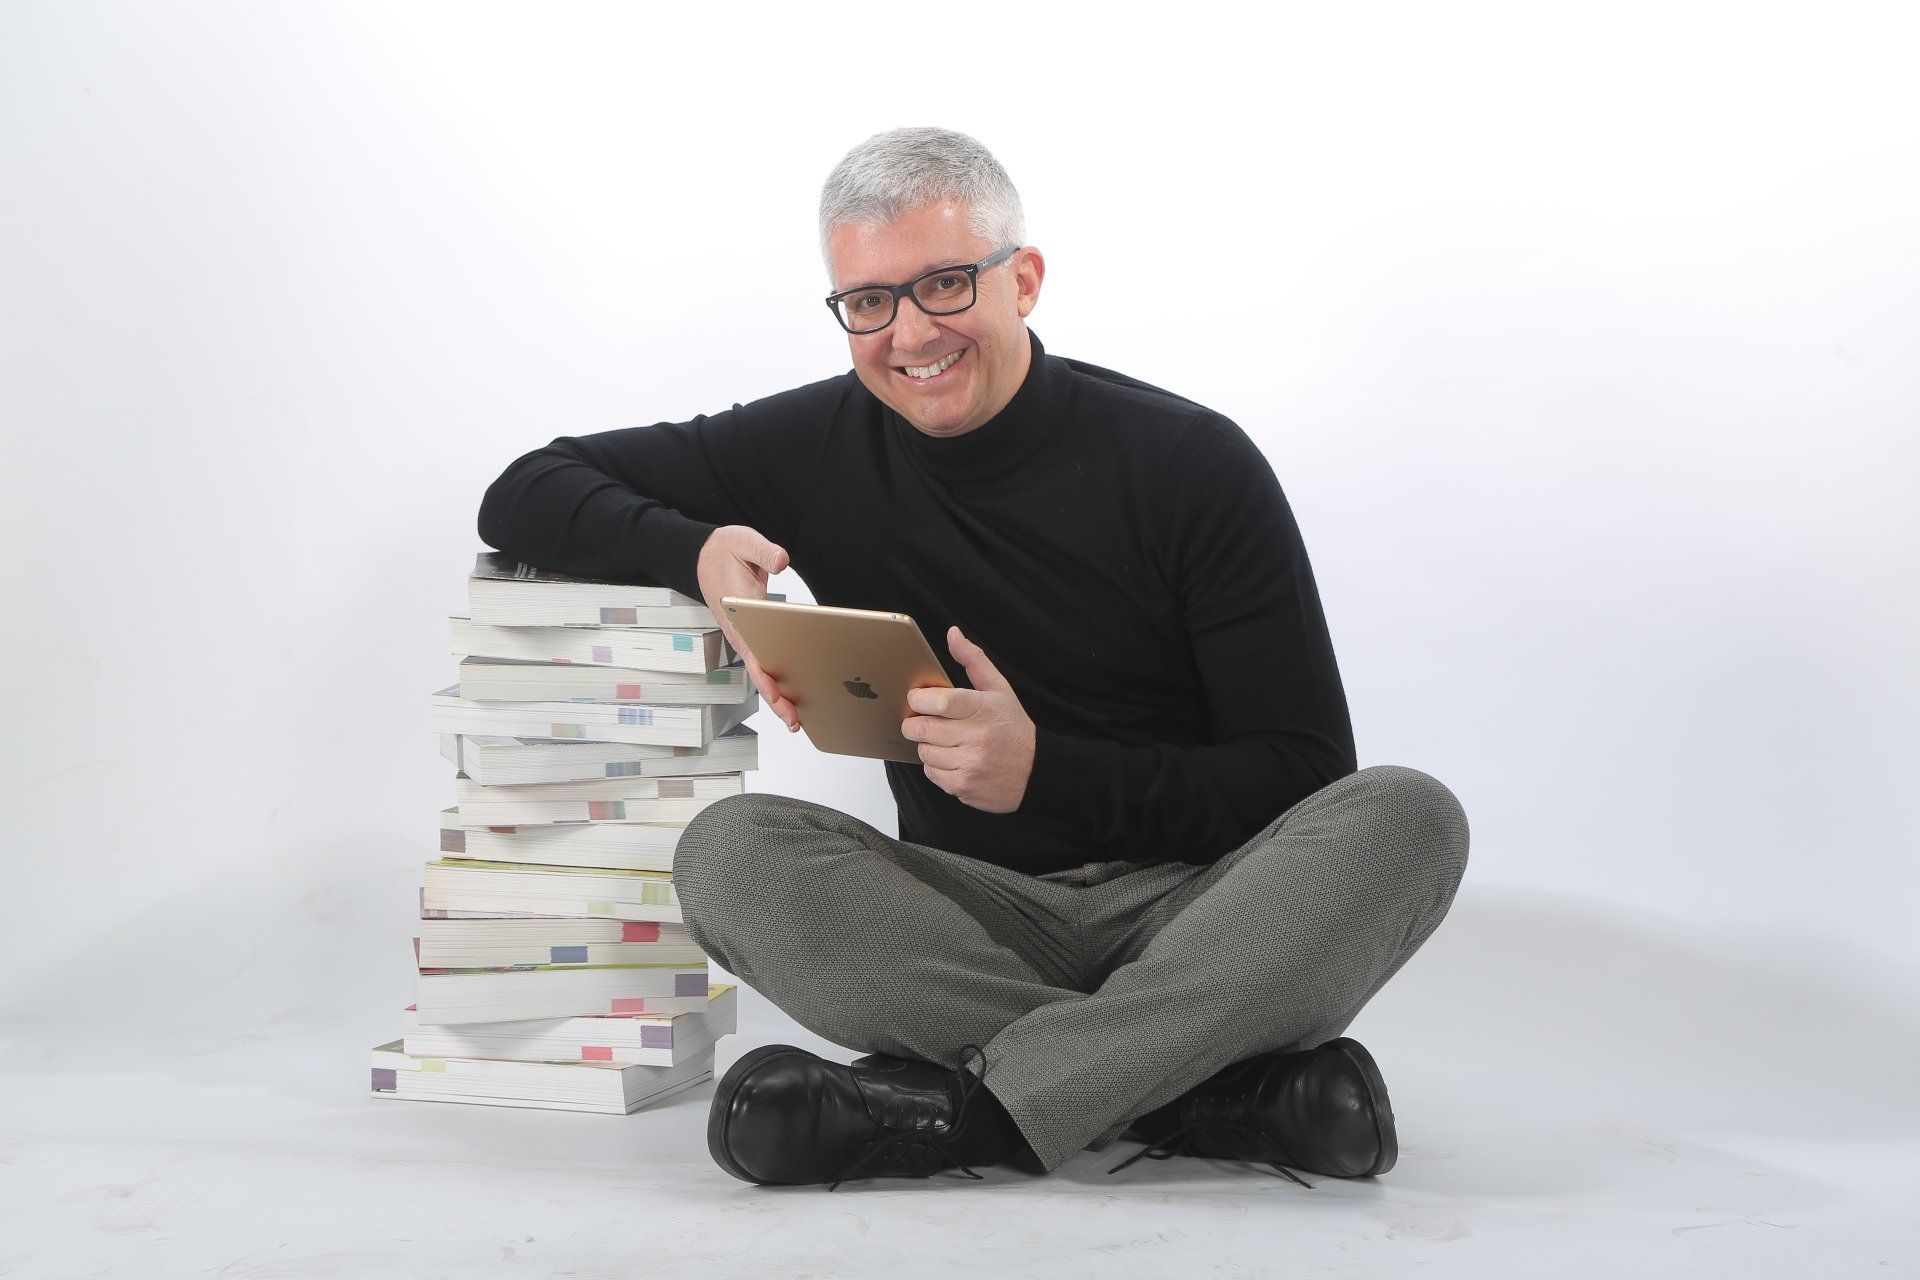 Un uomo è seduto sul pavimento con in mano un tablet accanto a una pila di libri.